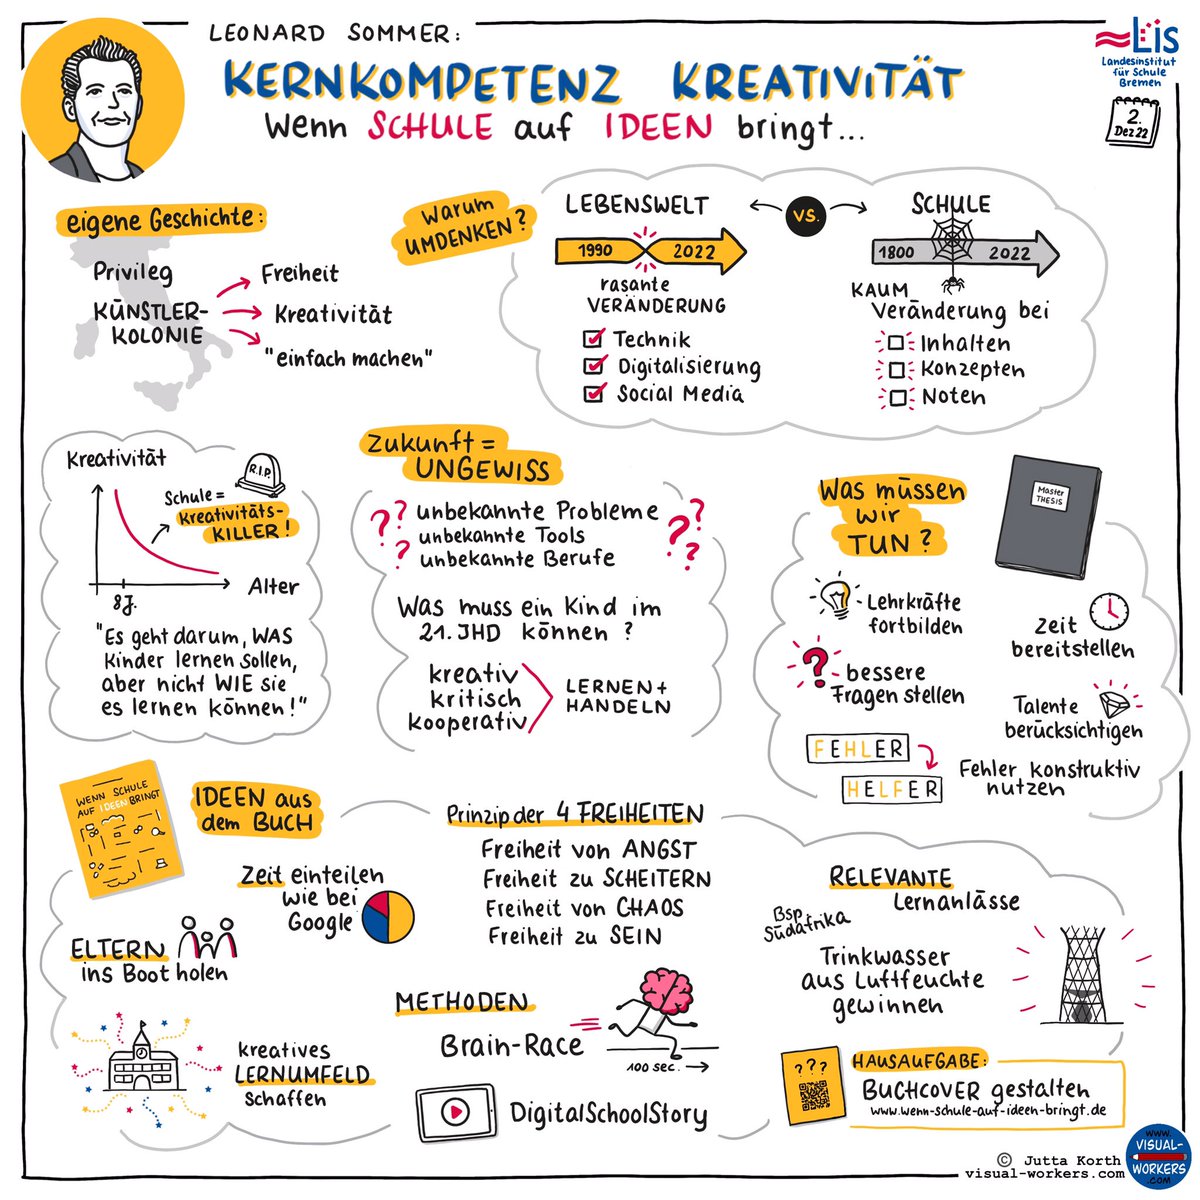 Inspirierende Keynote von Leonard Sommer beim Fachtag Kreativität des LIS Bremen. #kreativeschule #twitterlehrerzimmer #kreativität #problemsolving #schulevonmorgen #kompetenzen